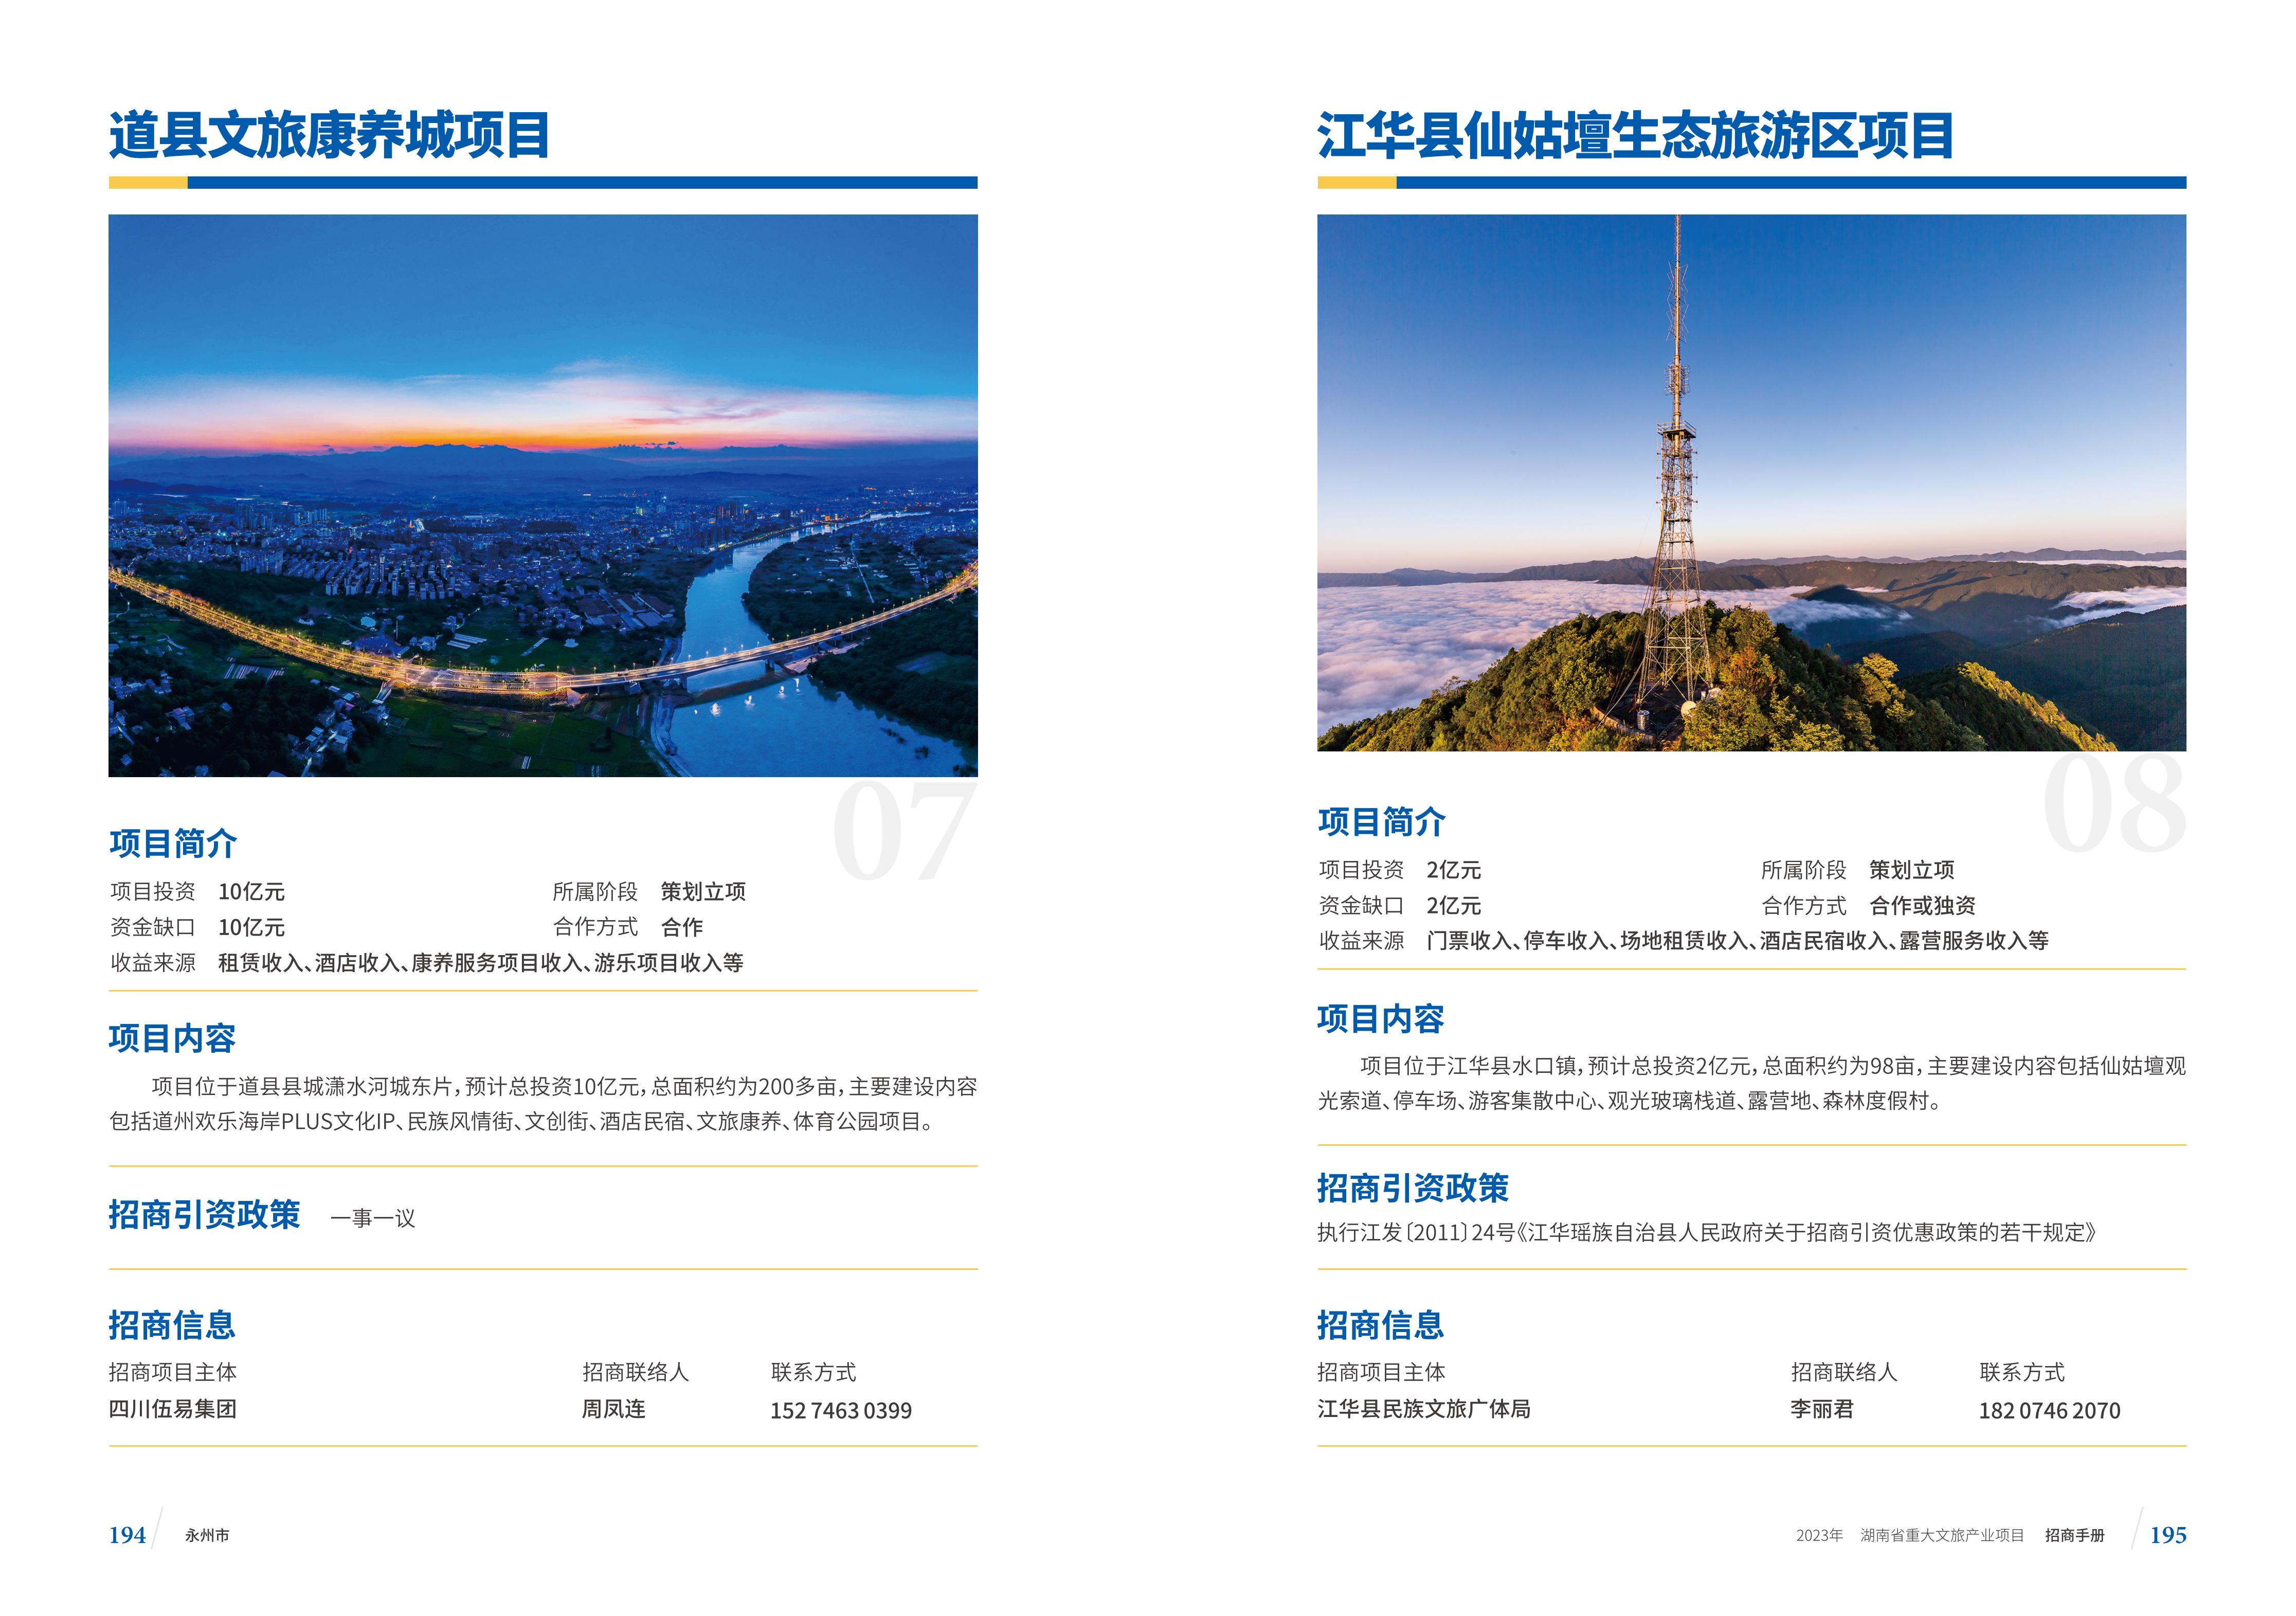 湖南省重大文旅产业项目招手册线上链接版_105.jpg